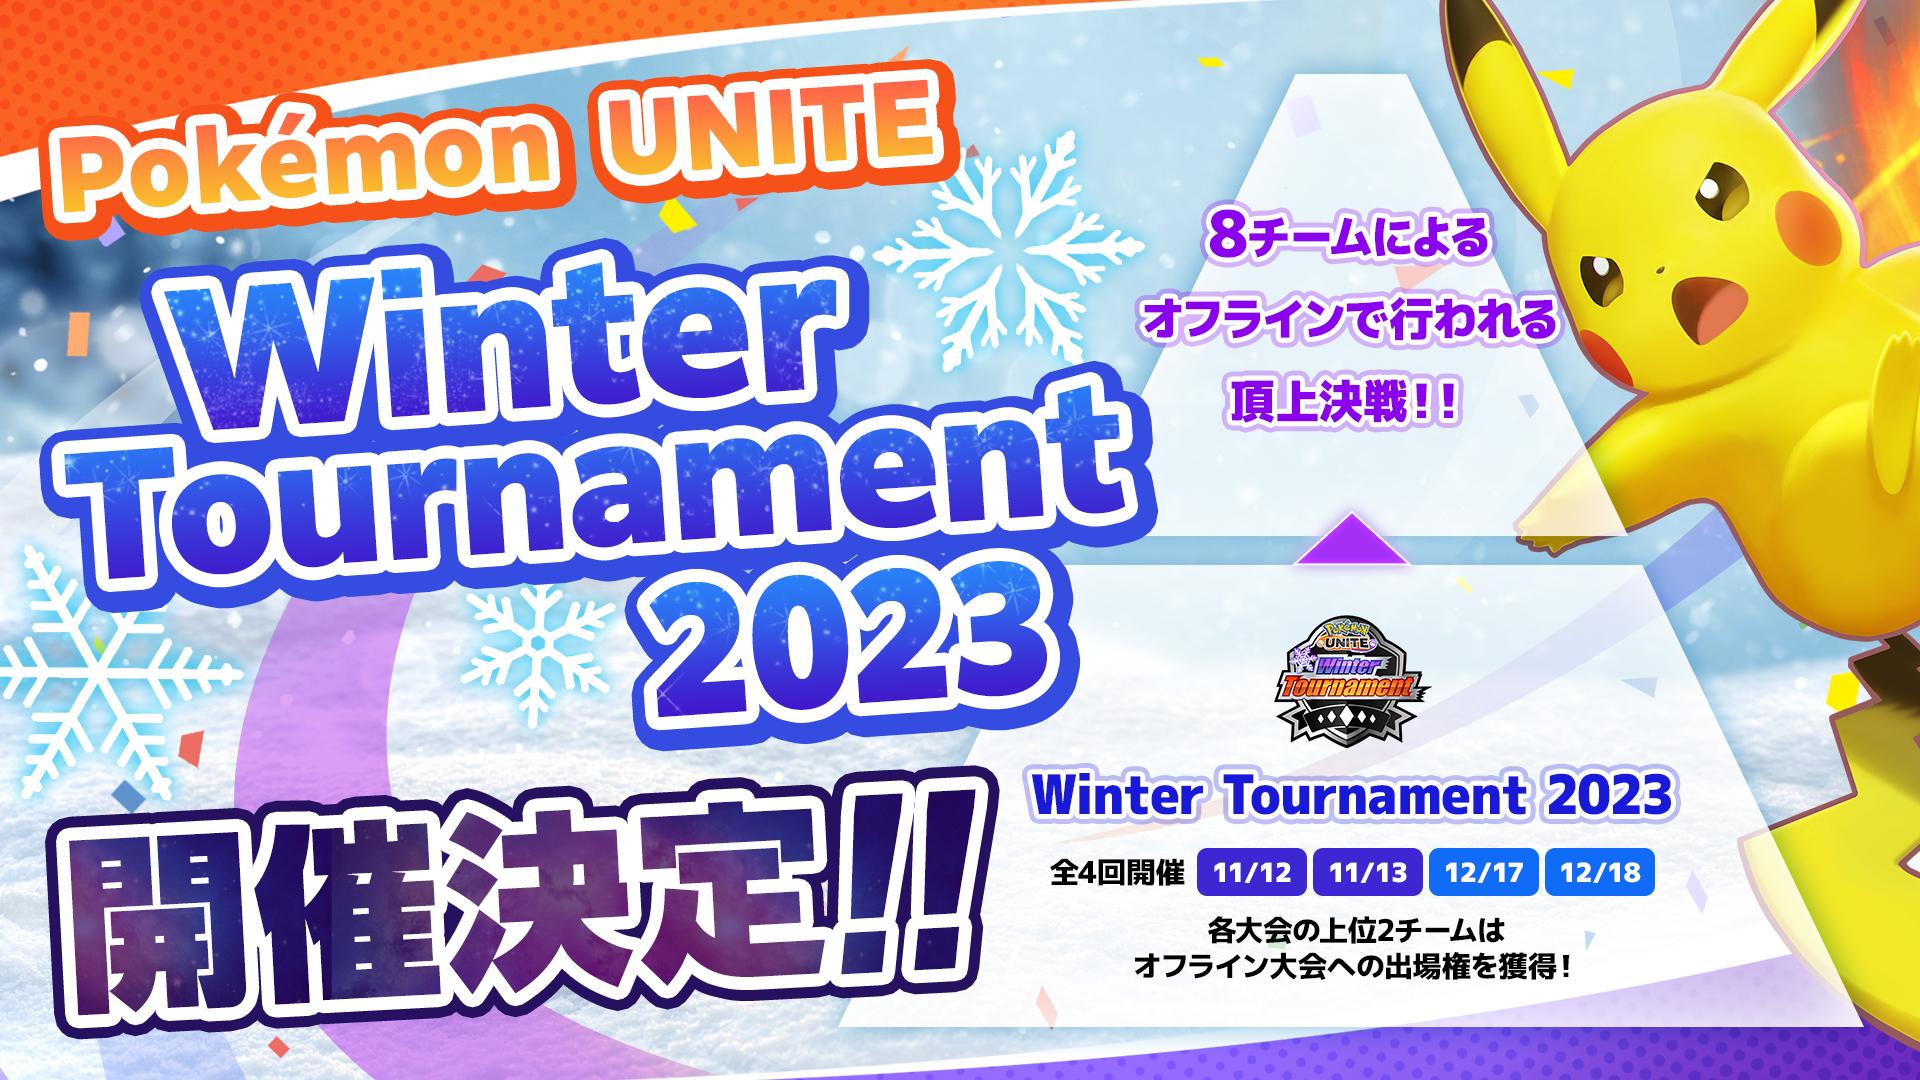 Pokémon UNITE Winter Tournament 2023 feature image